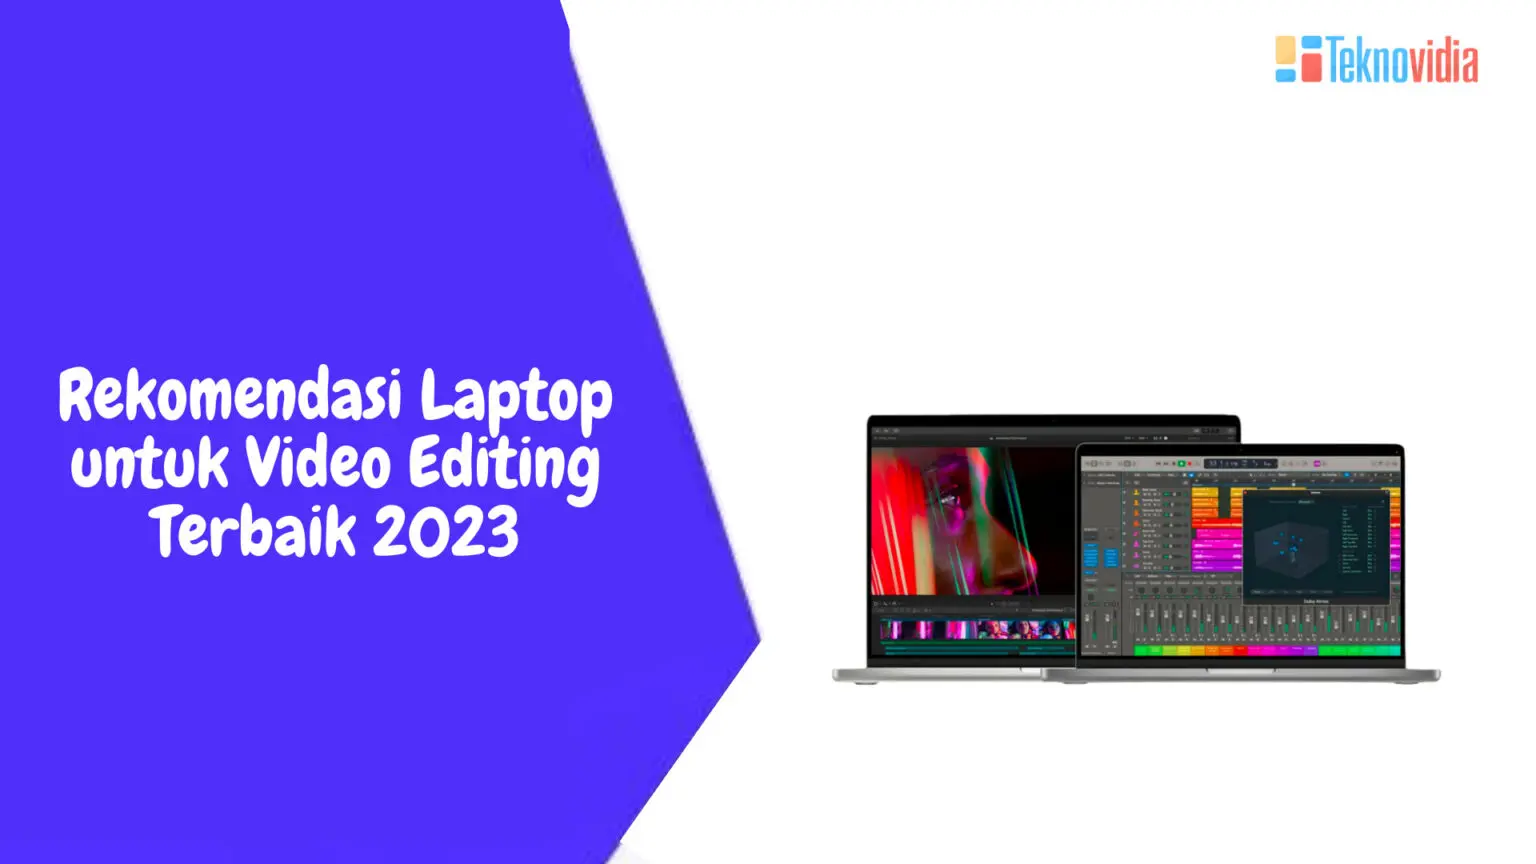 Rekomendasi Laptop untuk Video Editing Terbaik 2023